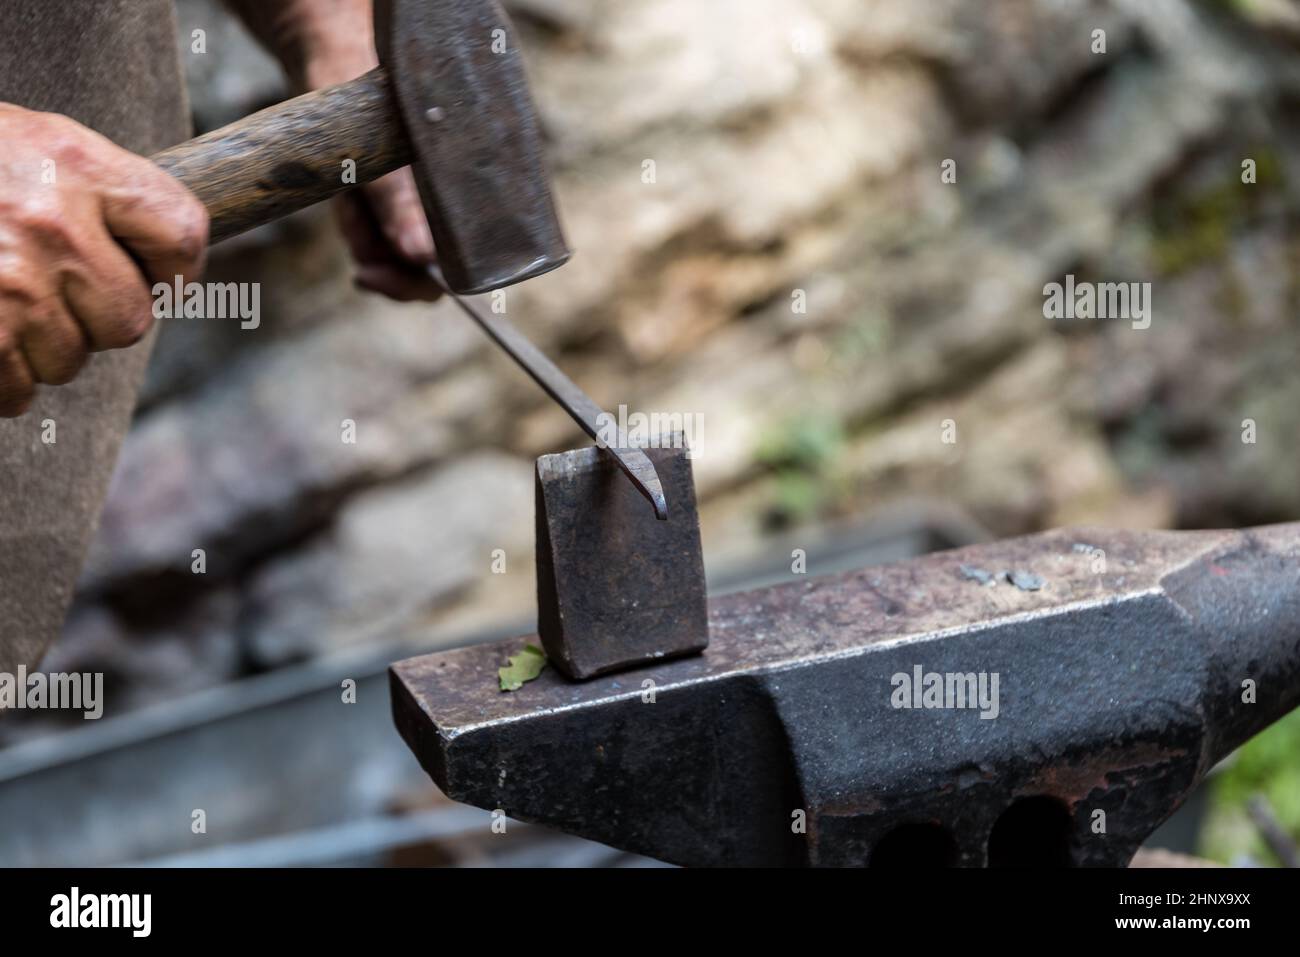 Artesanía Forjar sobre un yunque - metalurgia en detalle de forja Foto de stock